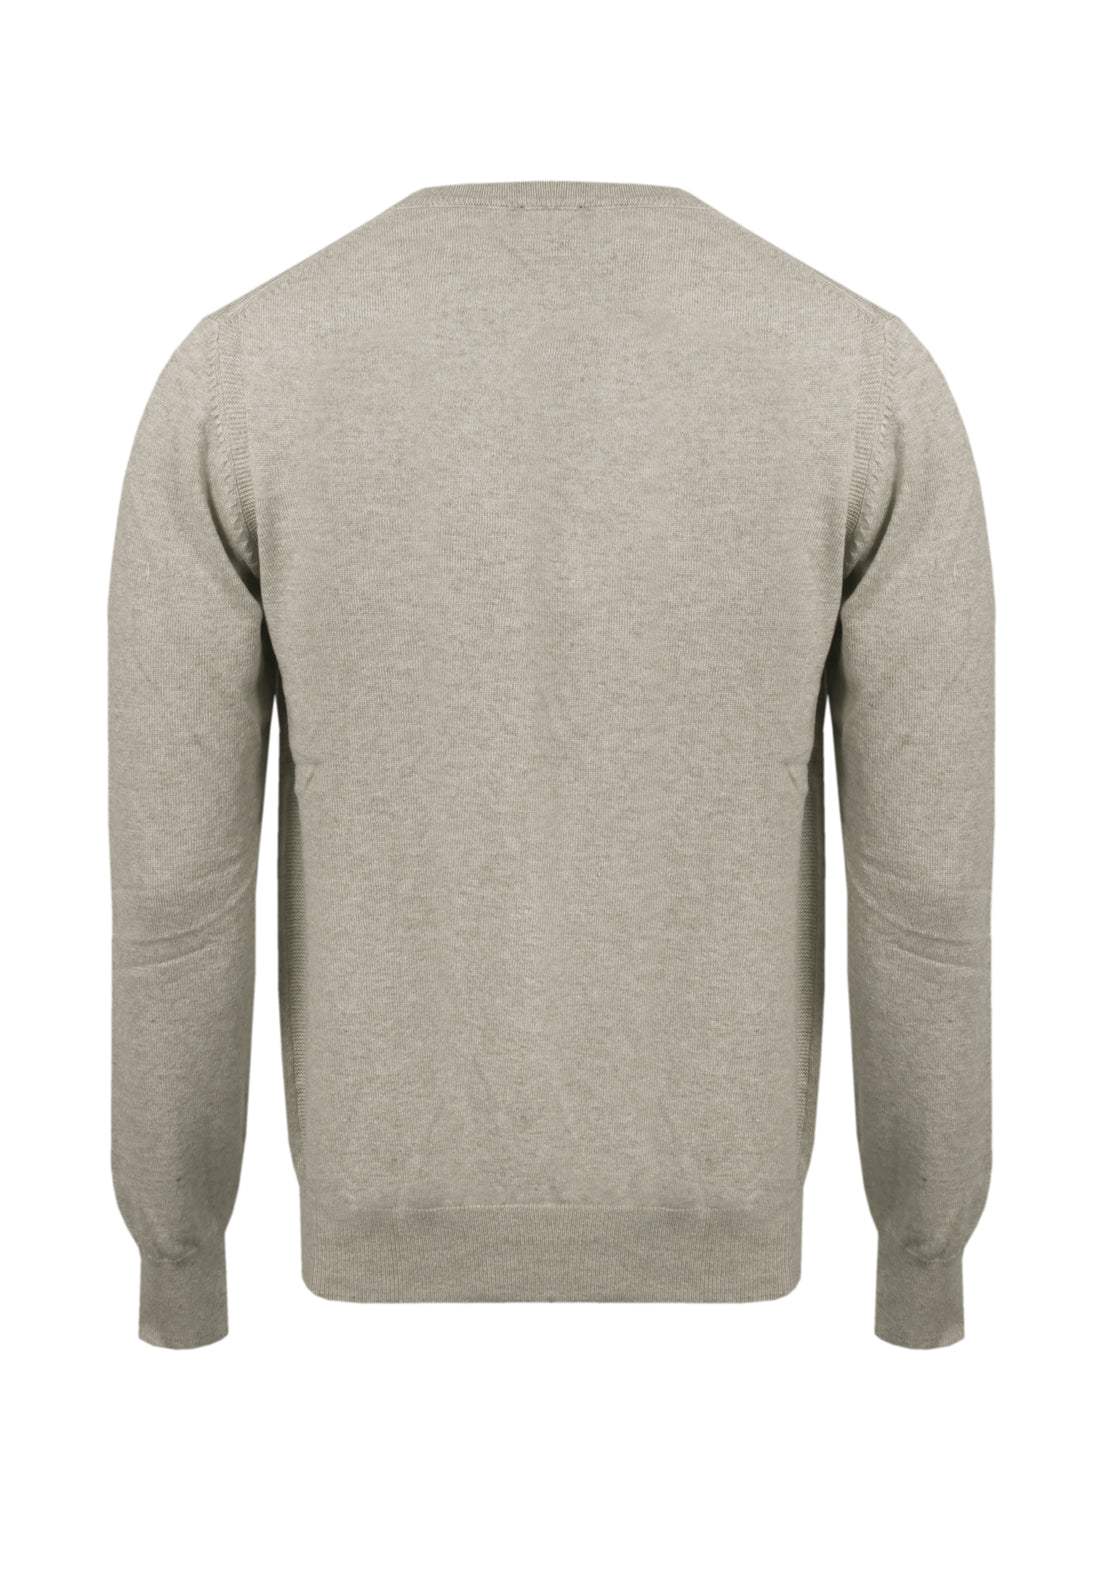 Wool &amp; Cashmere Round Neck Sweater - Beige -